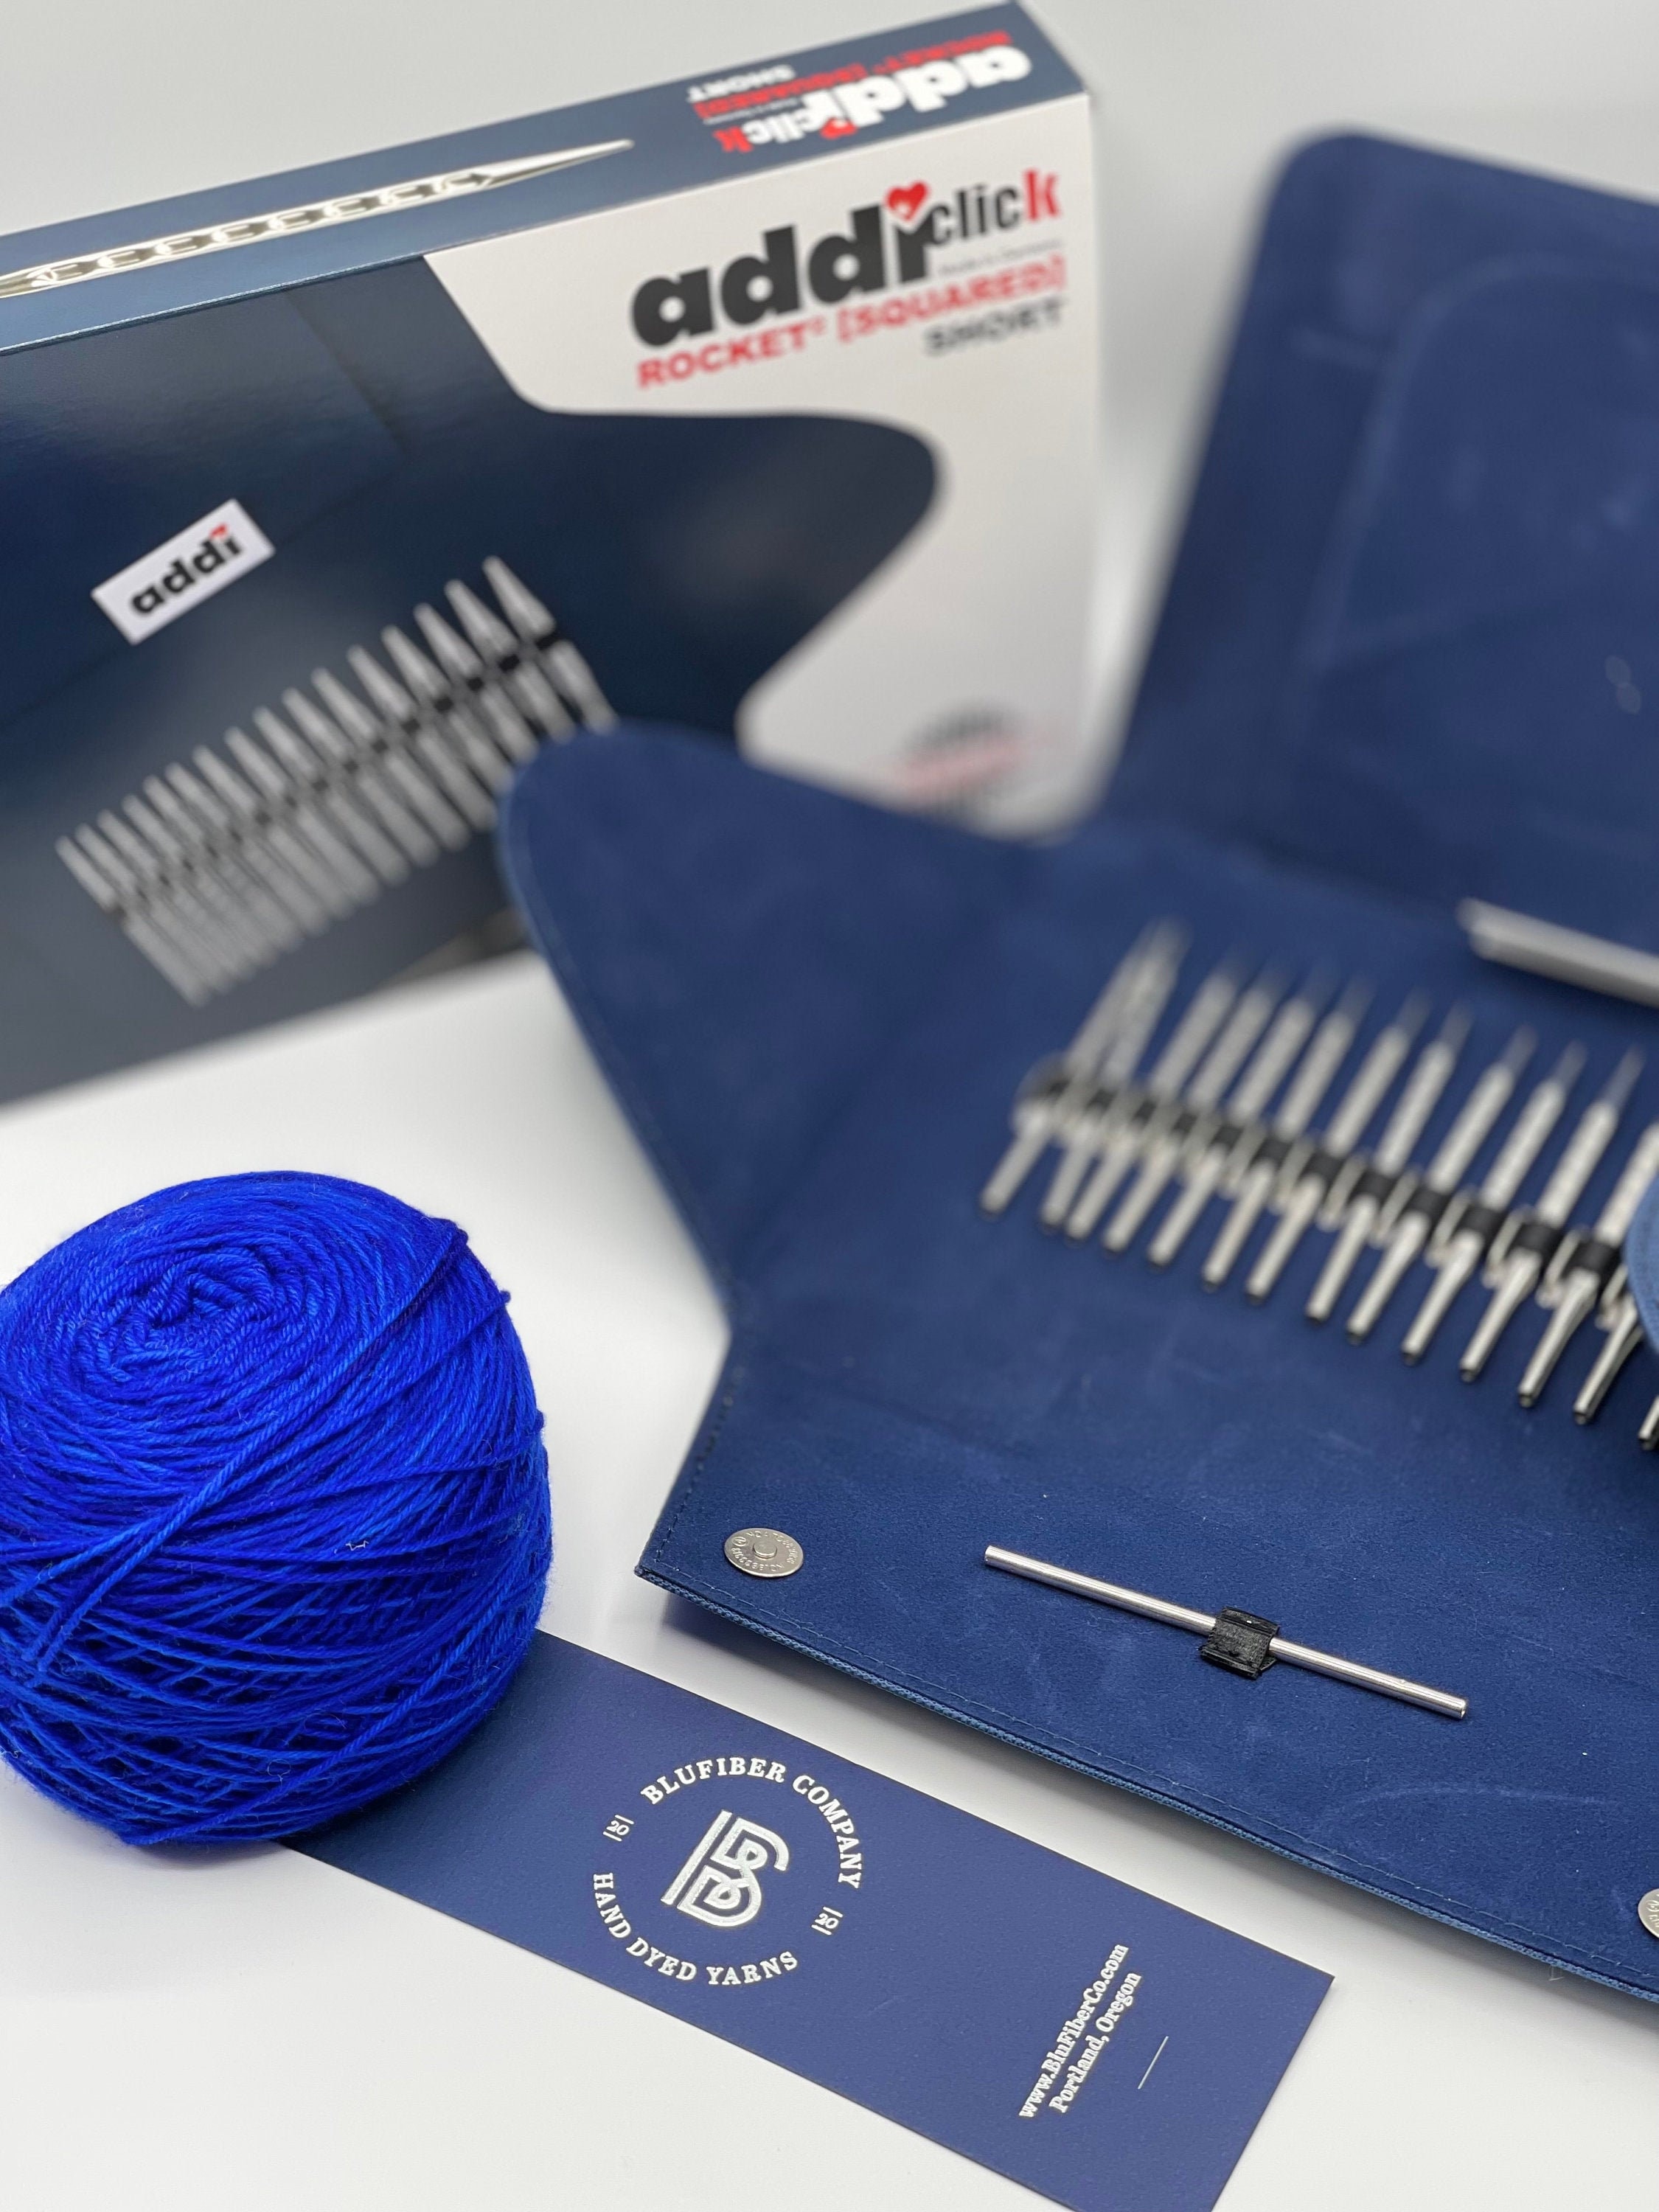 Addi Express Professional 990-2 Addi Egg 880-2 Knitting Mills Set Hand  Knitting Machines Knitting Yarn Shipping Fully Insured 